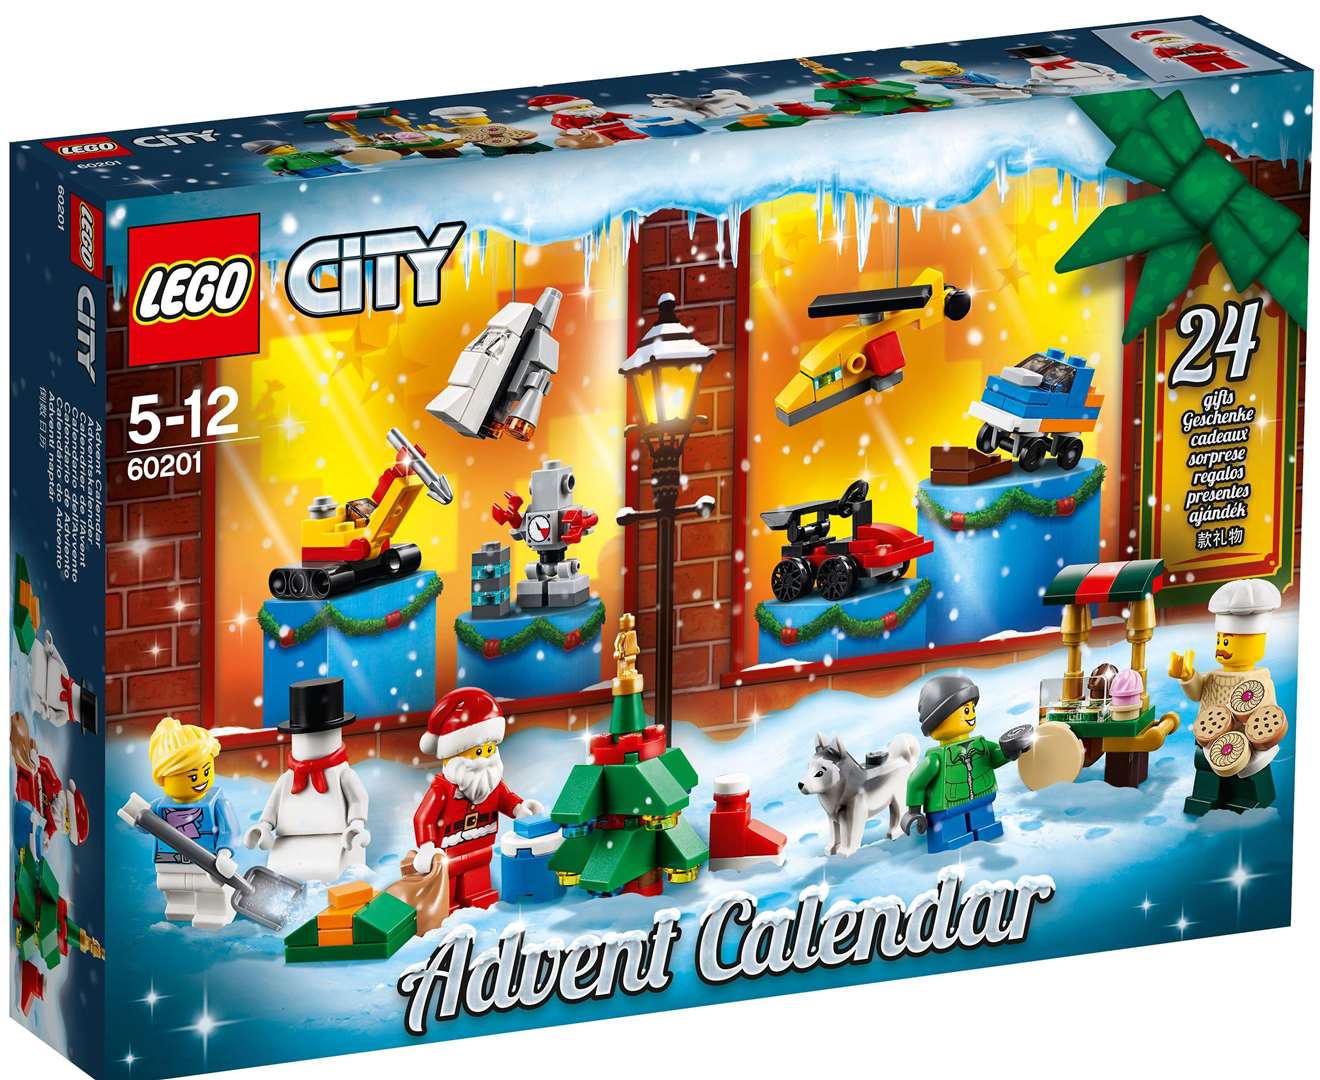 Lego City advent calendar